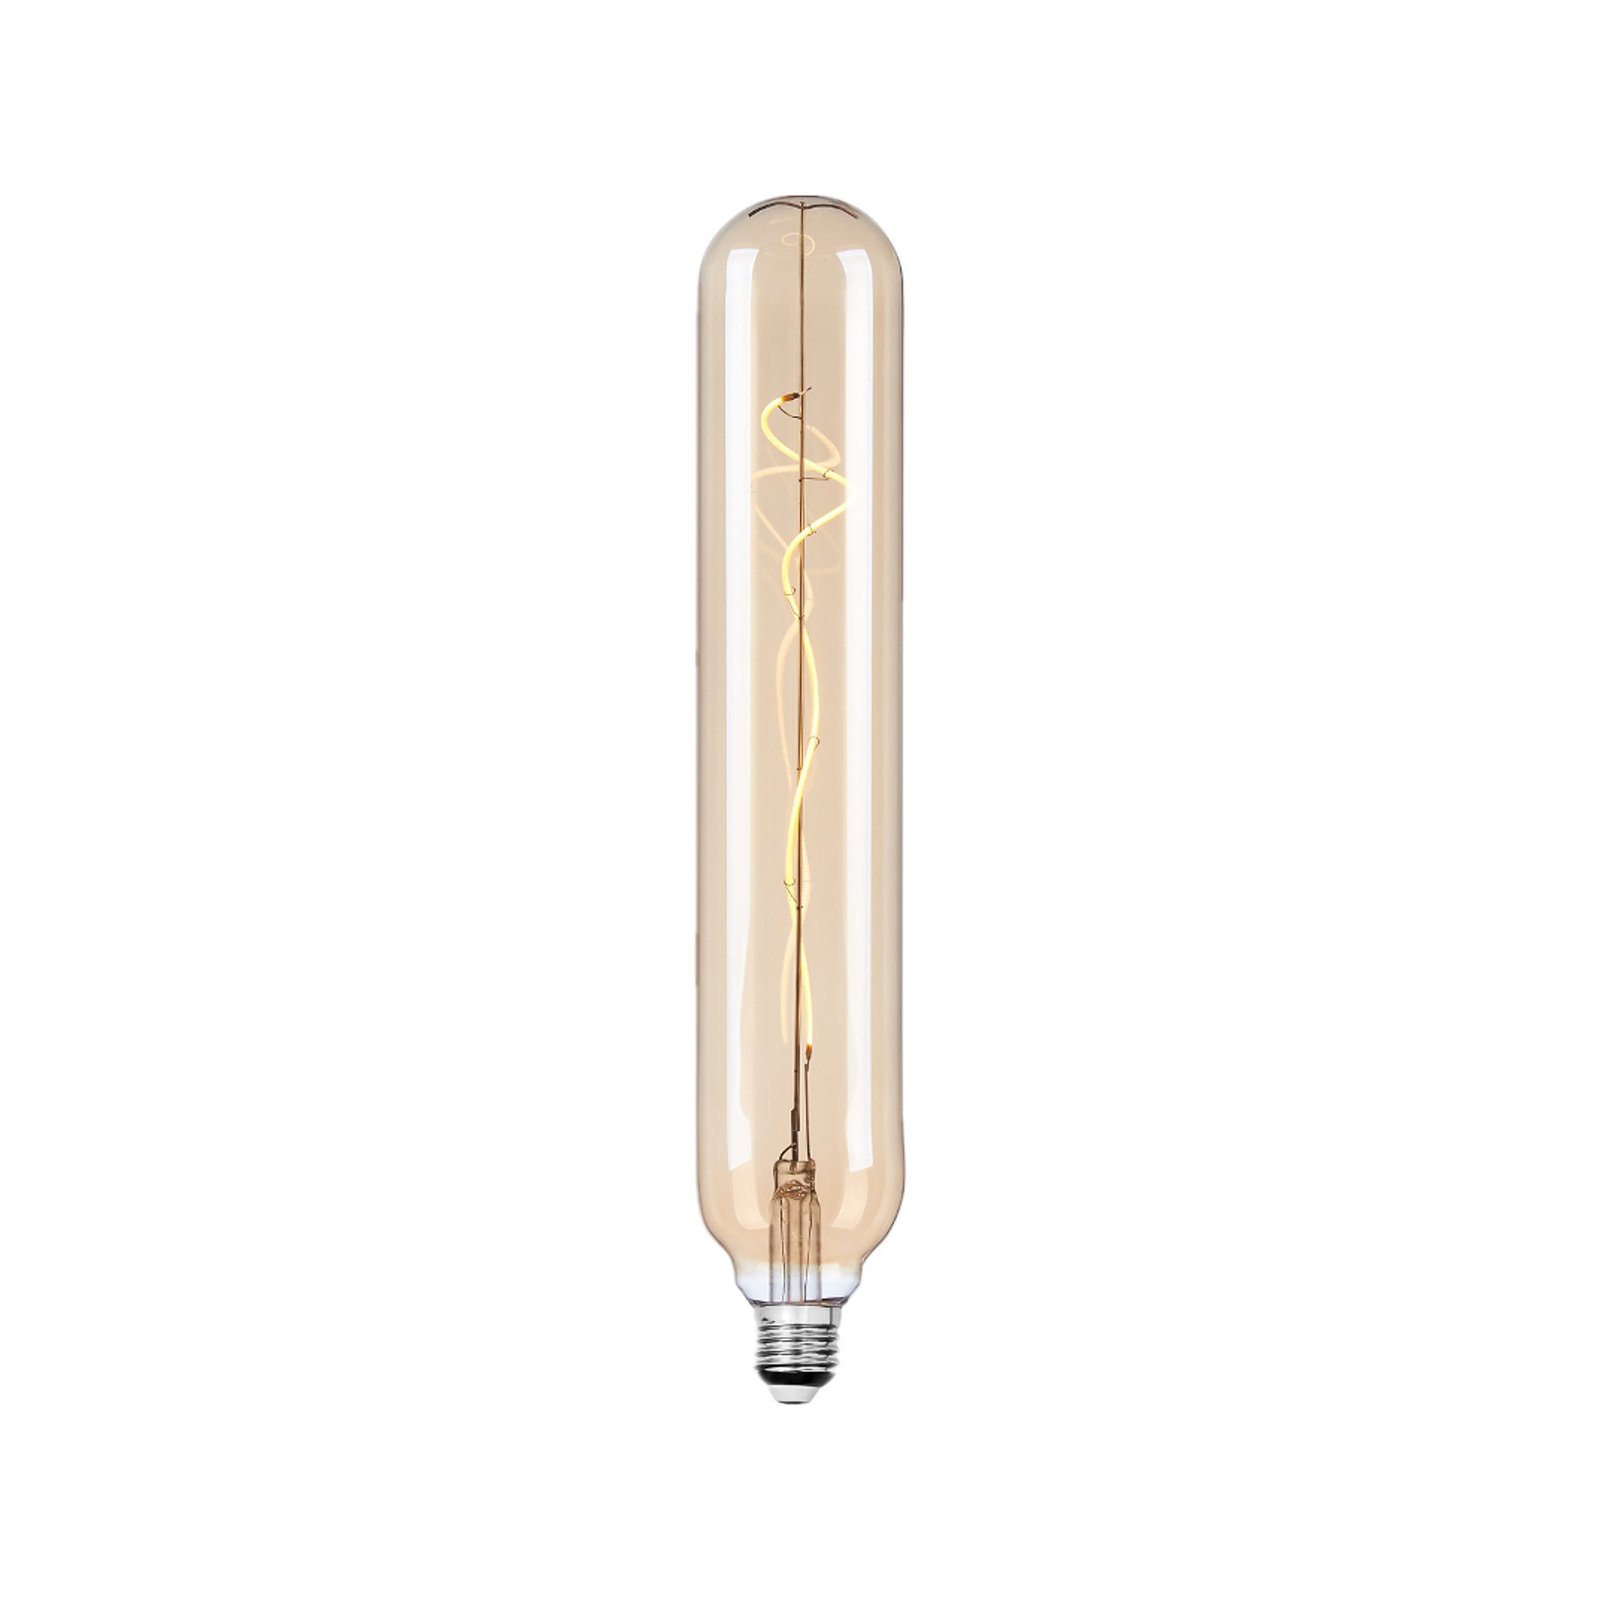 Lucande LED bulb E27 Ø 6 cm 4 W 2,700 K amber